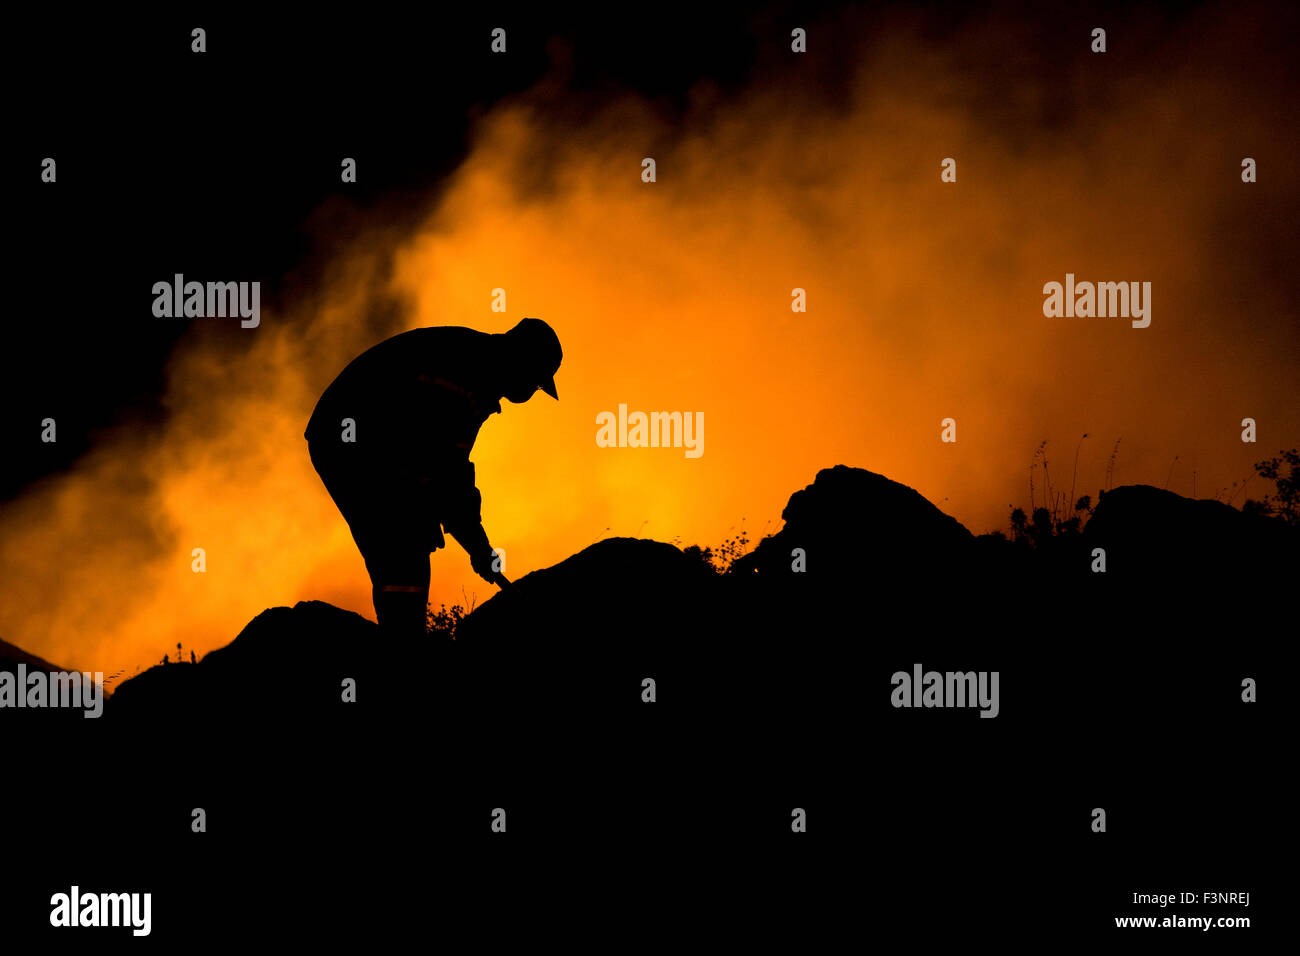 Hintergrundbeleuchtung durch brennende Flamme Rauch, Shilhouette Feuerwehrmann, trägt einen kleinen Rauchschutz-Maske im Gesicht beim Löschangriff. Stockfoto